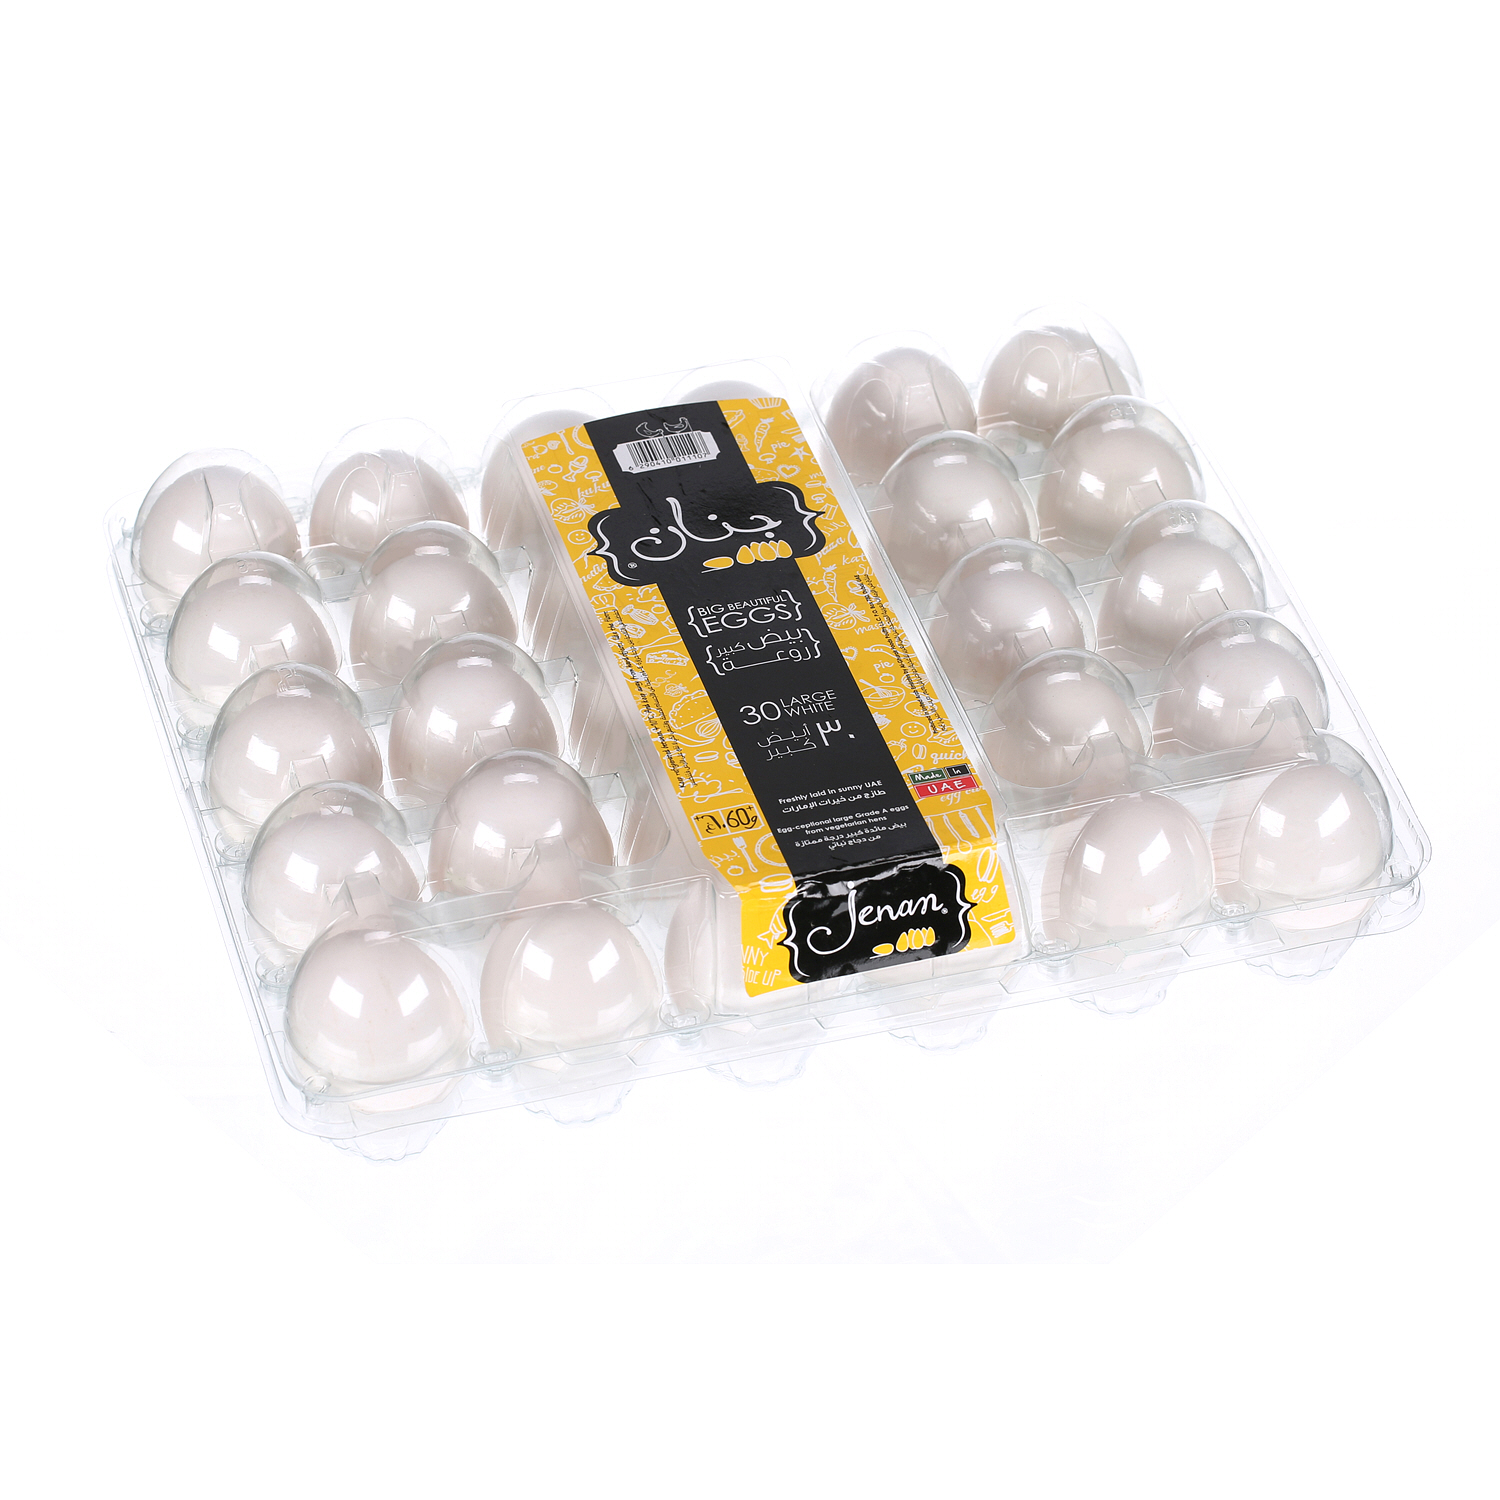 Jenan White Eggs Large 30 Pack